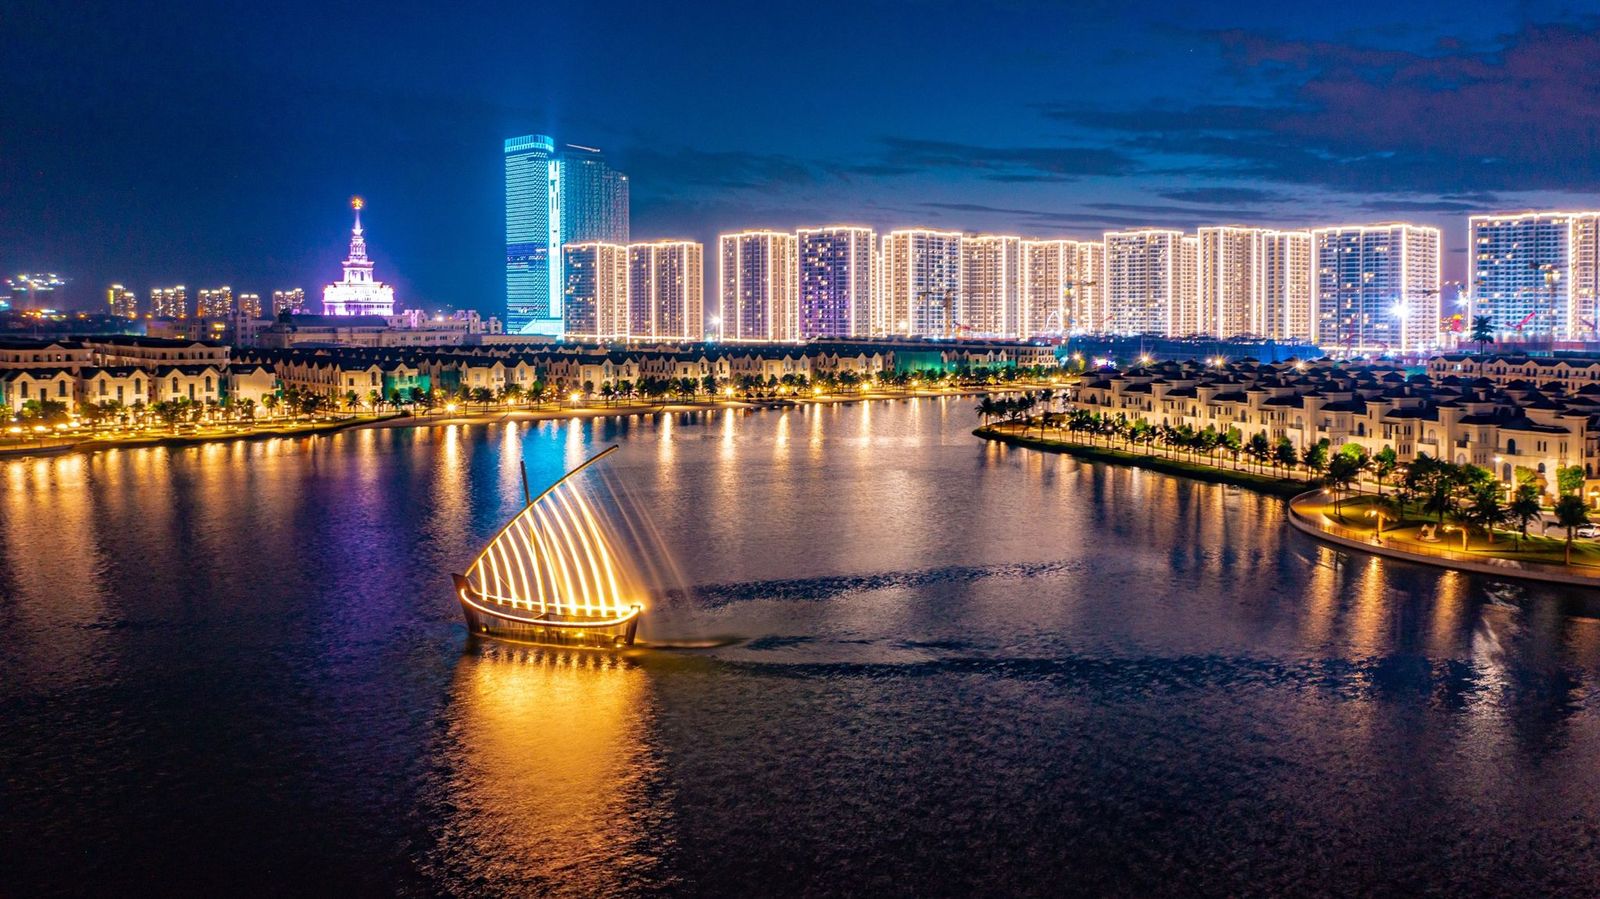 Toàn cảnh quận “Ocean Park” về đêm với những tòa nhà cao tầng, tháp văn phòng, đại học VinUni… được thắp sáng đã và đang thu hút đông đảo cộng đồng người nước ngoài tại Việt Nam.